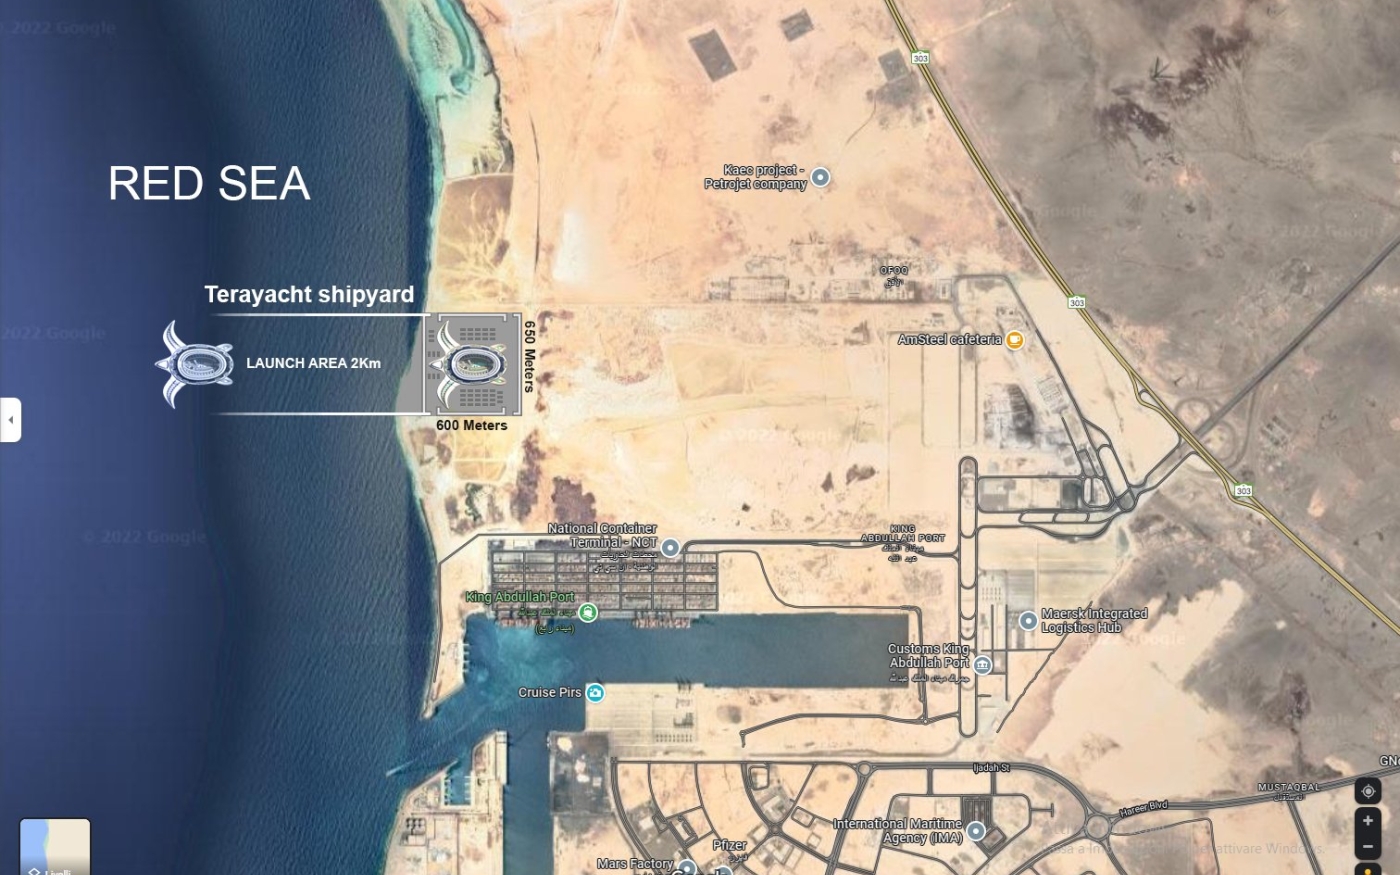 Le projet de chantier naval pour le térayacht, en Arabie saoudite (Lazzarini Design Studio)